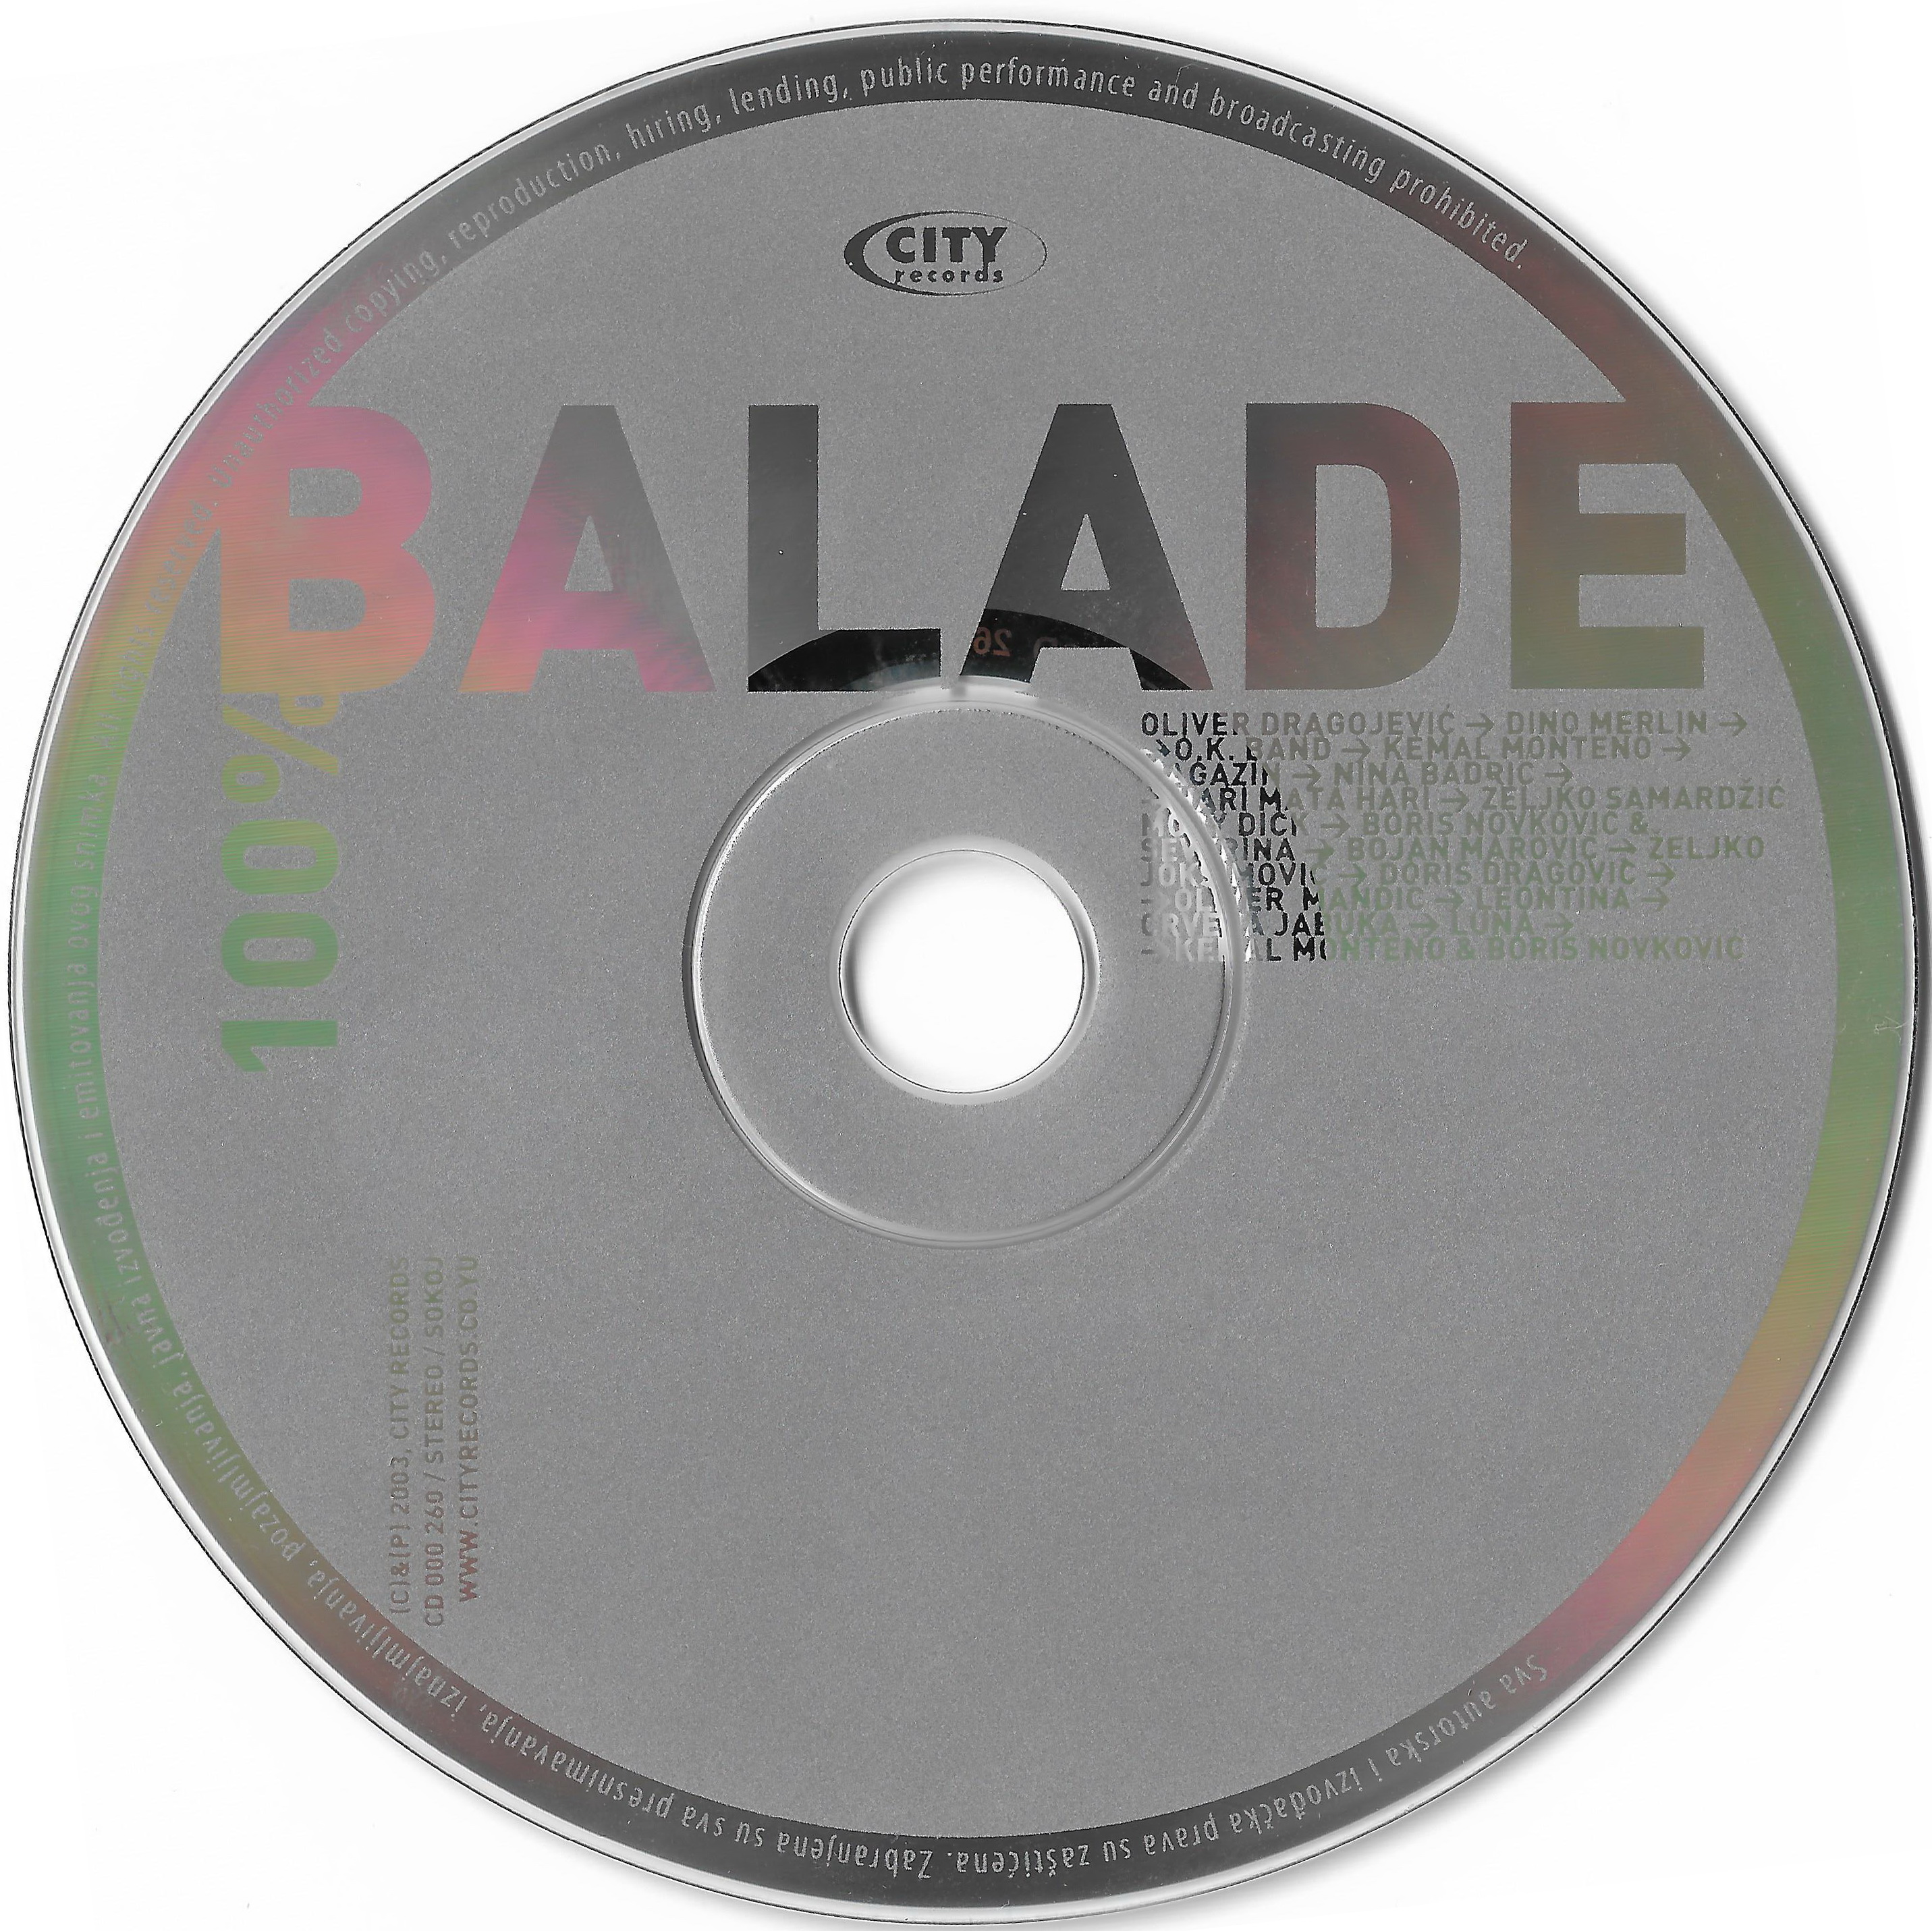 100 Balade 2003 CD